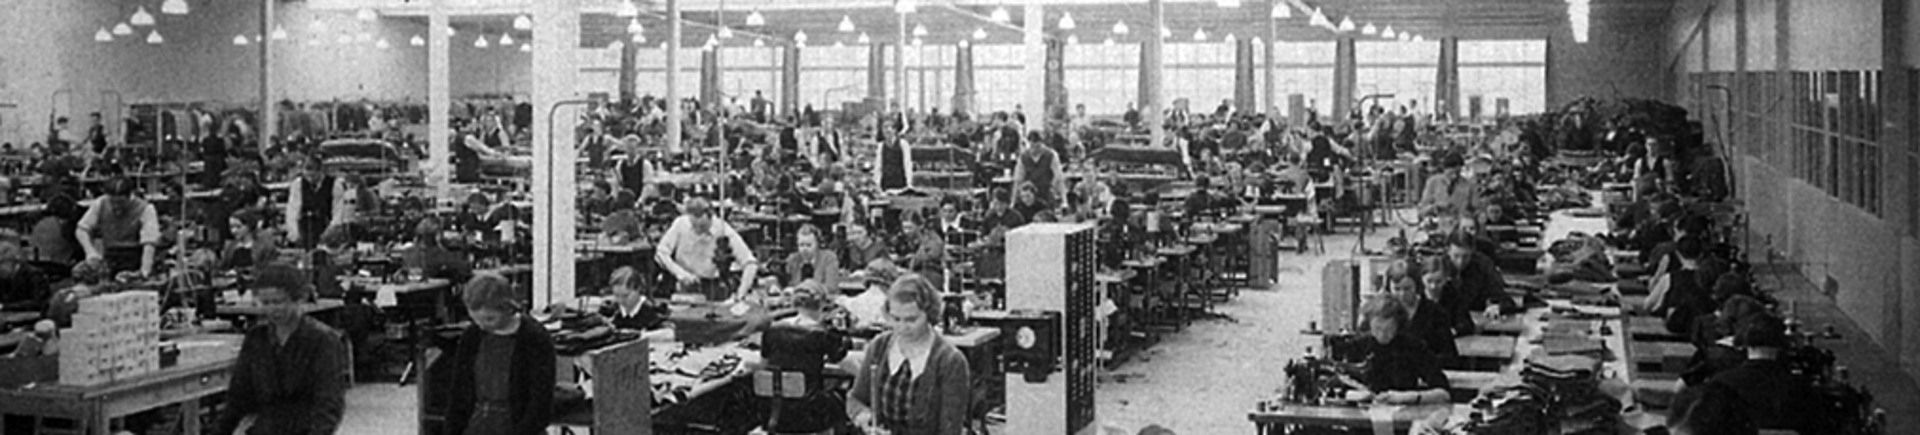 En vy av fabriksarbetare som står och arbetar på ett verkstadsgolv